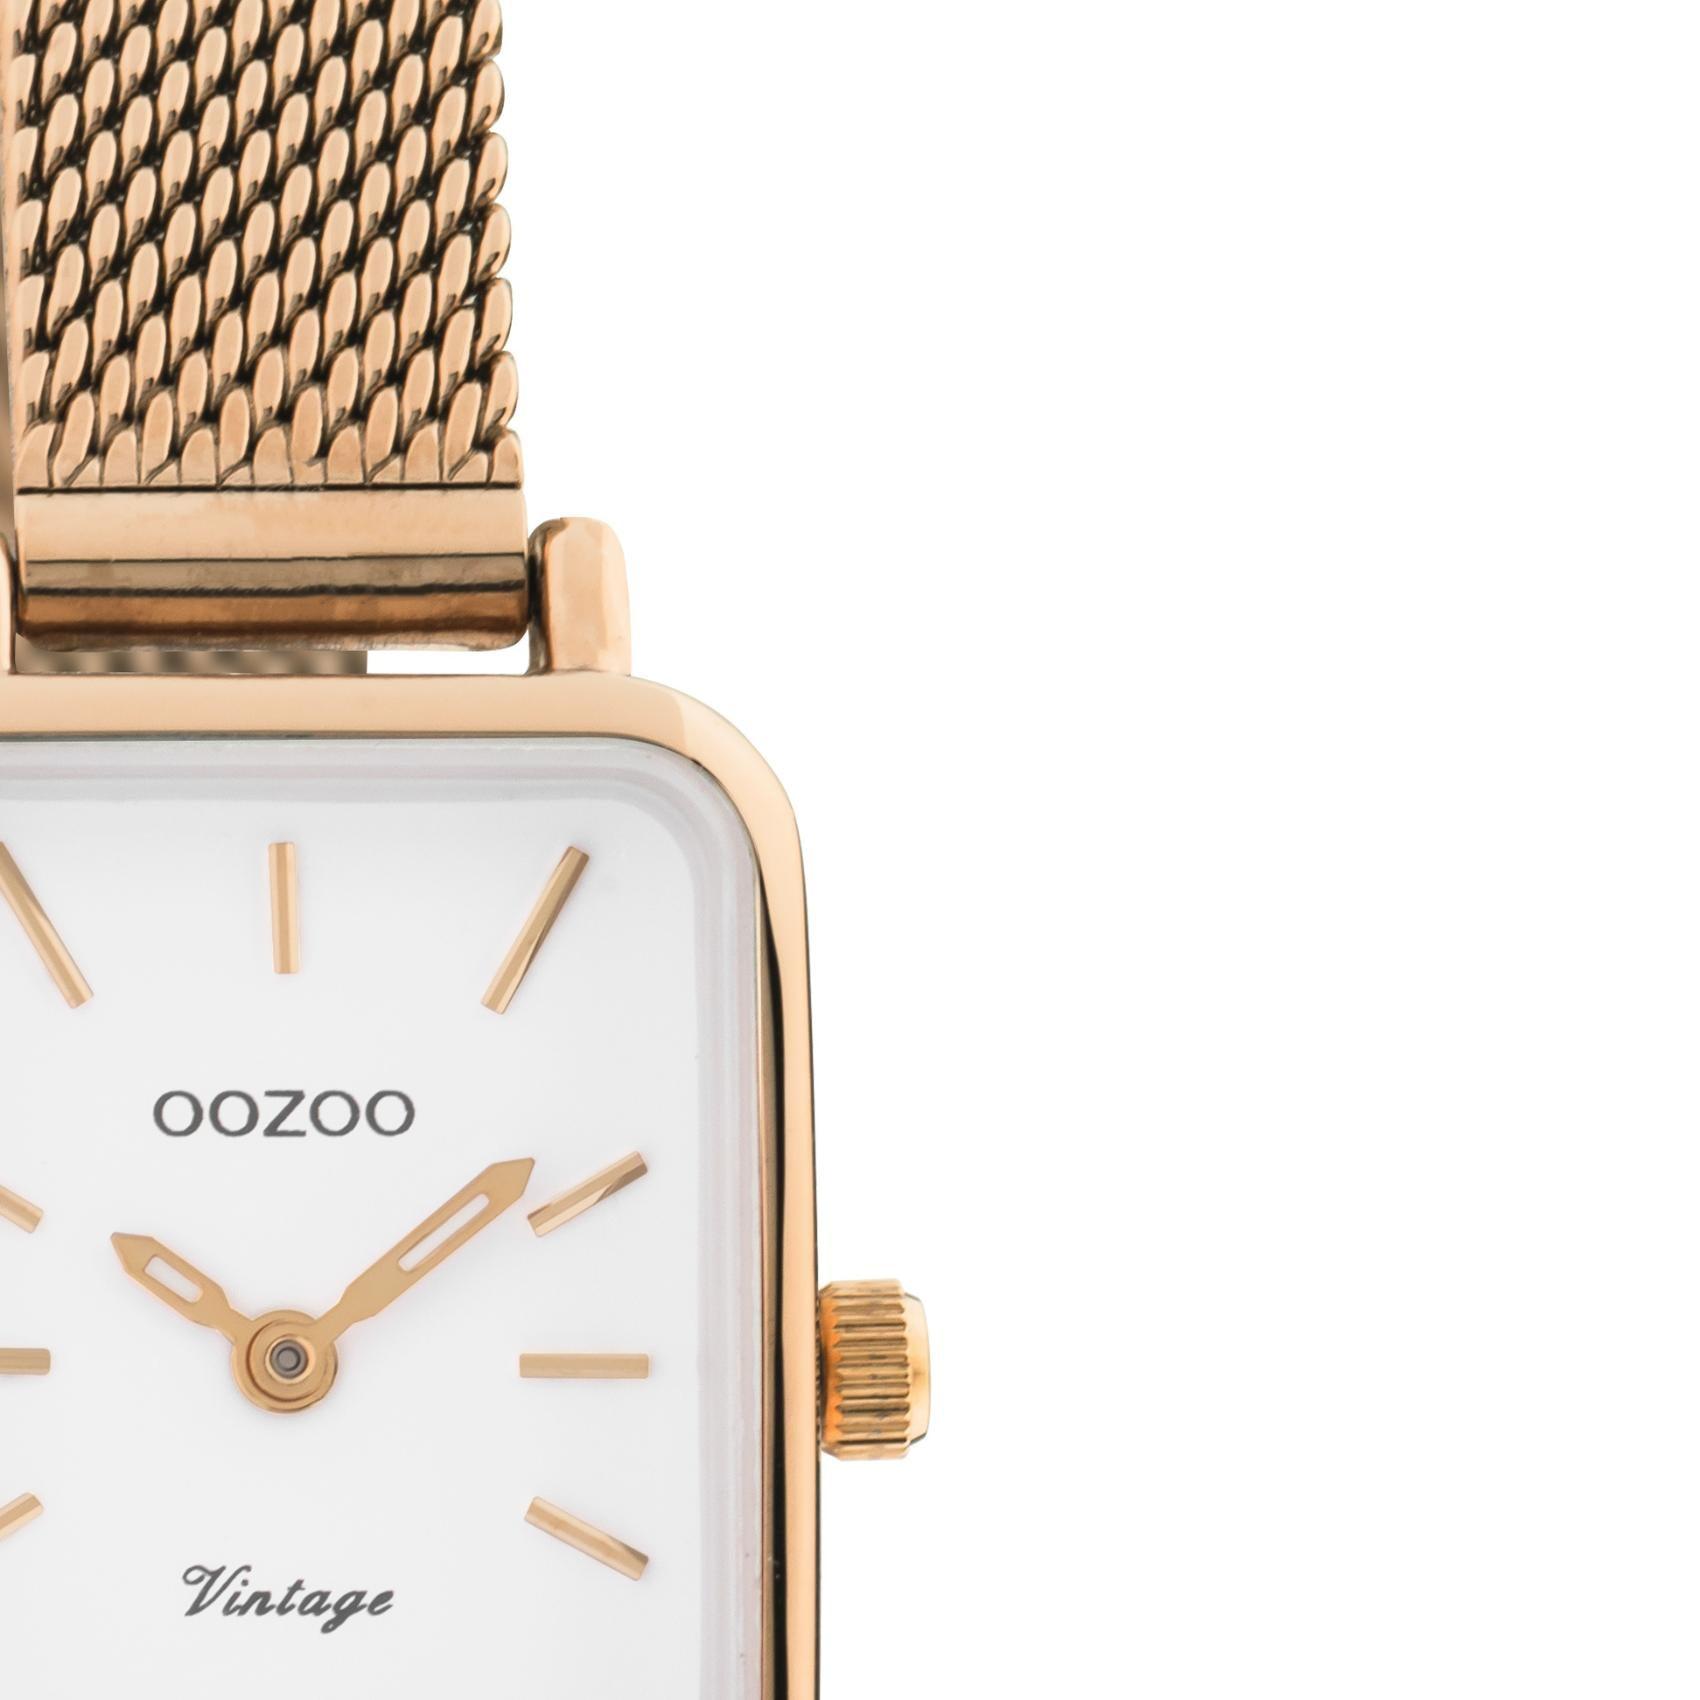 Τετράγωνο ρολόι Oozoo Vintage C10977 με ροζ χρυσό ατσάλινο μπρασελέ,άσπρο καντράν 26x21mm και μηχανισμό μπαταρίας quartz.